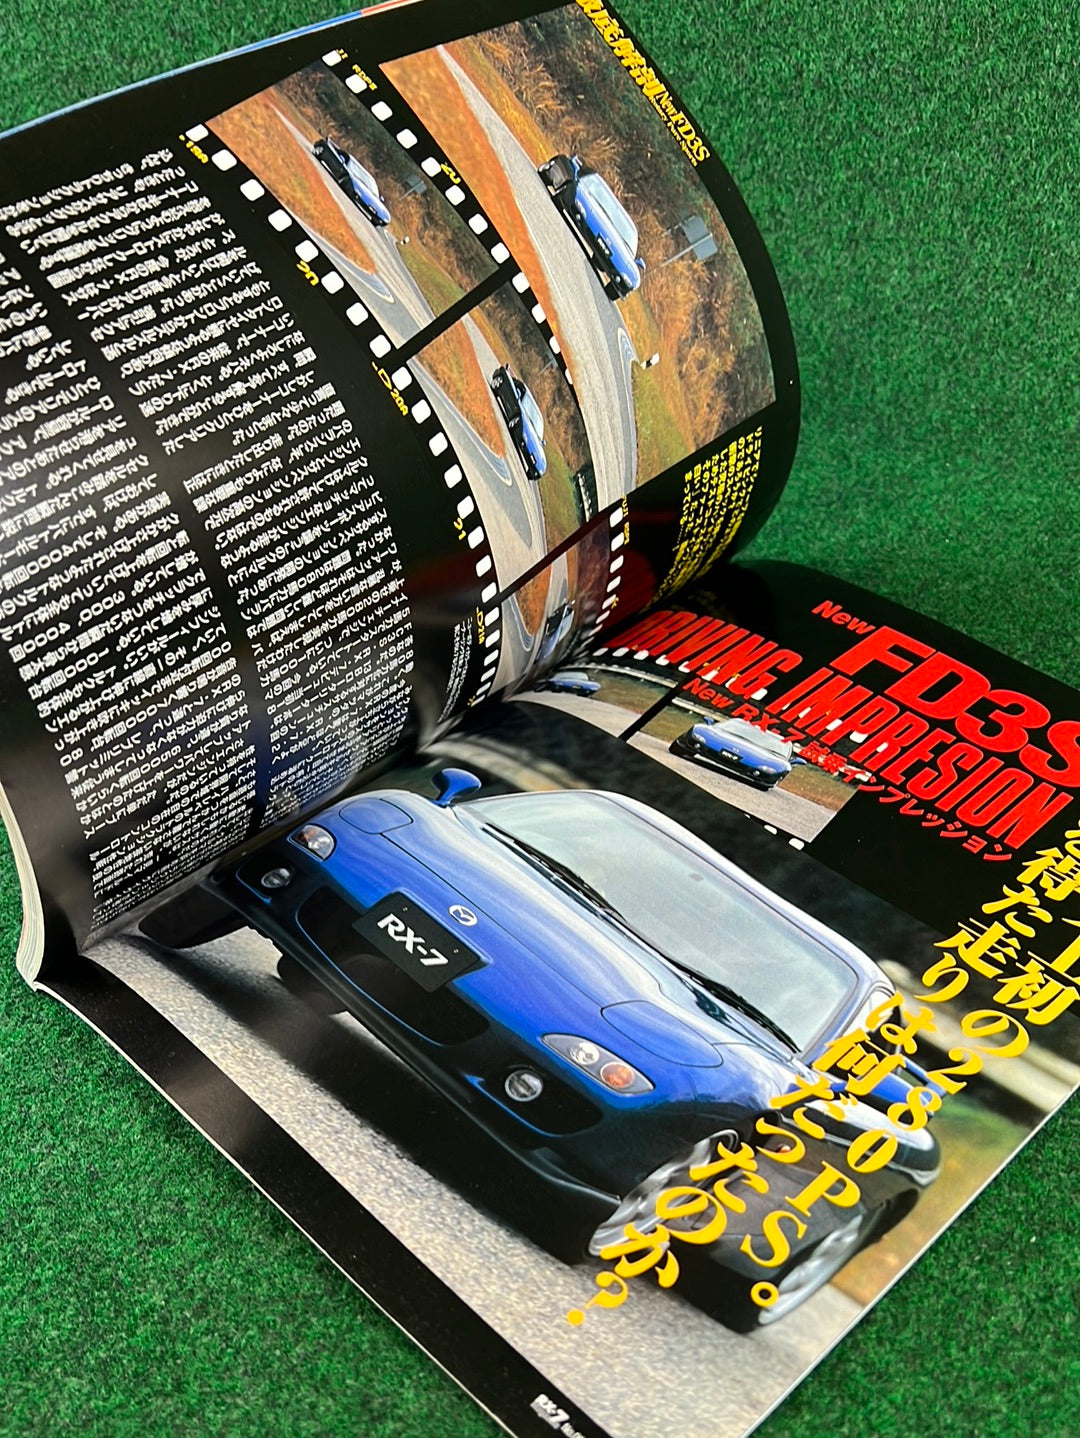 RX7 Magazine - No. 001 through No. 005